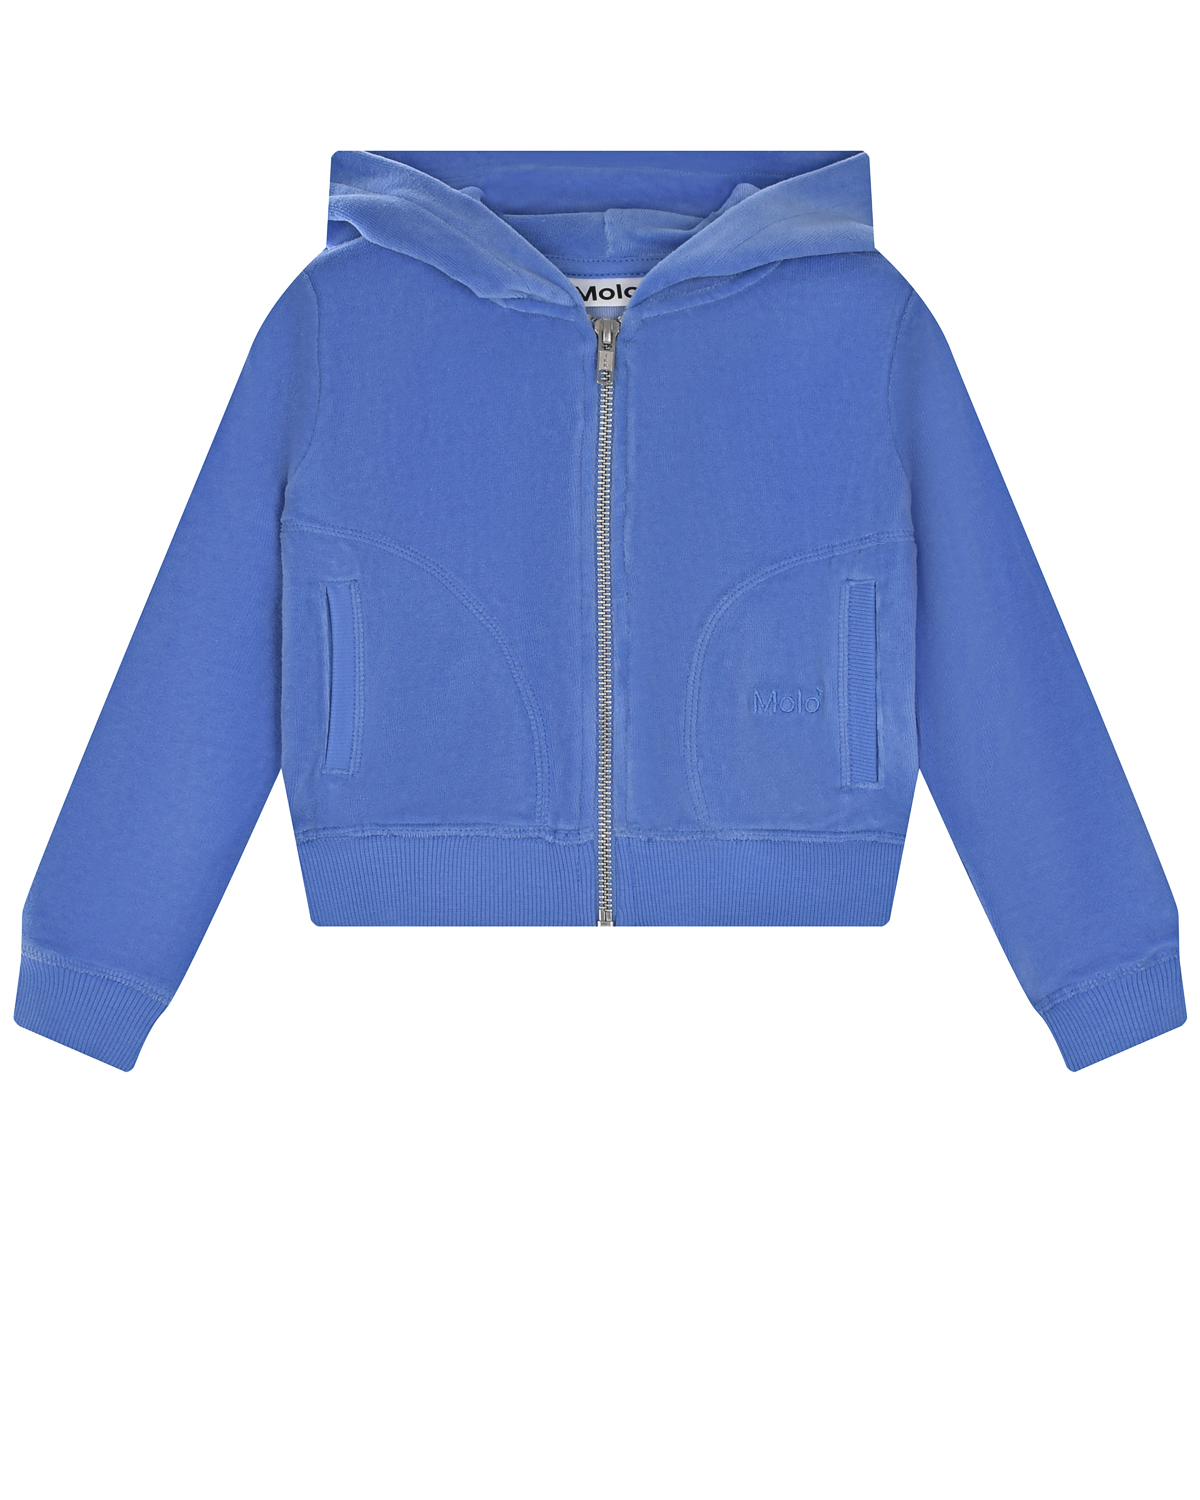 Голубая спортивная куртка Azurine Molo детская, размер 104, цвет голубой